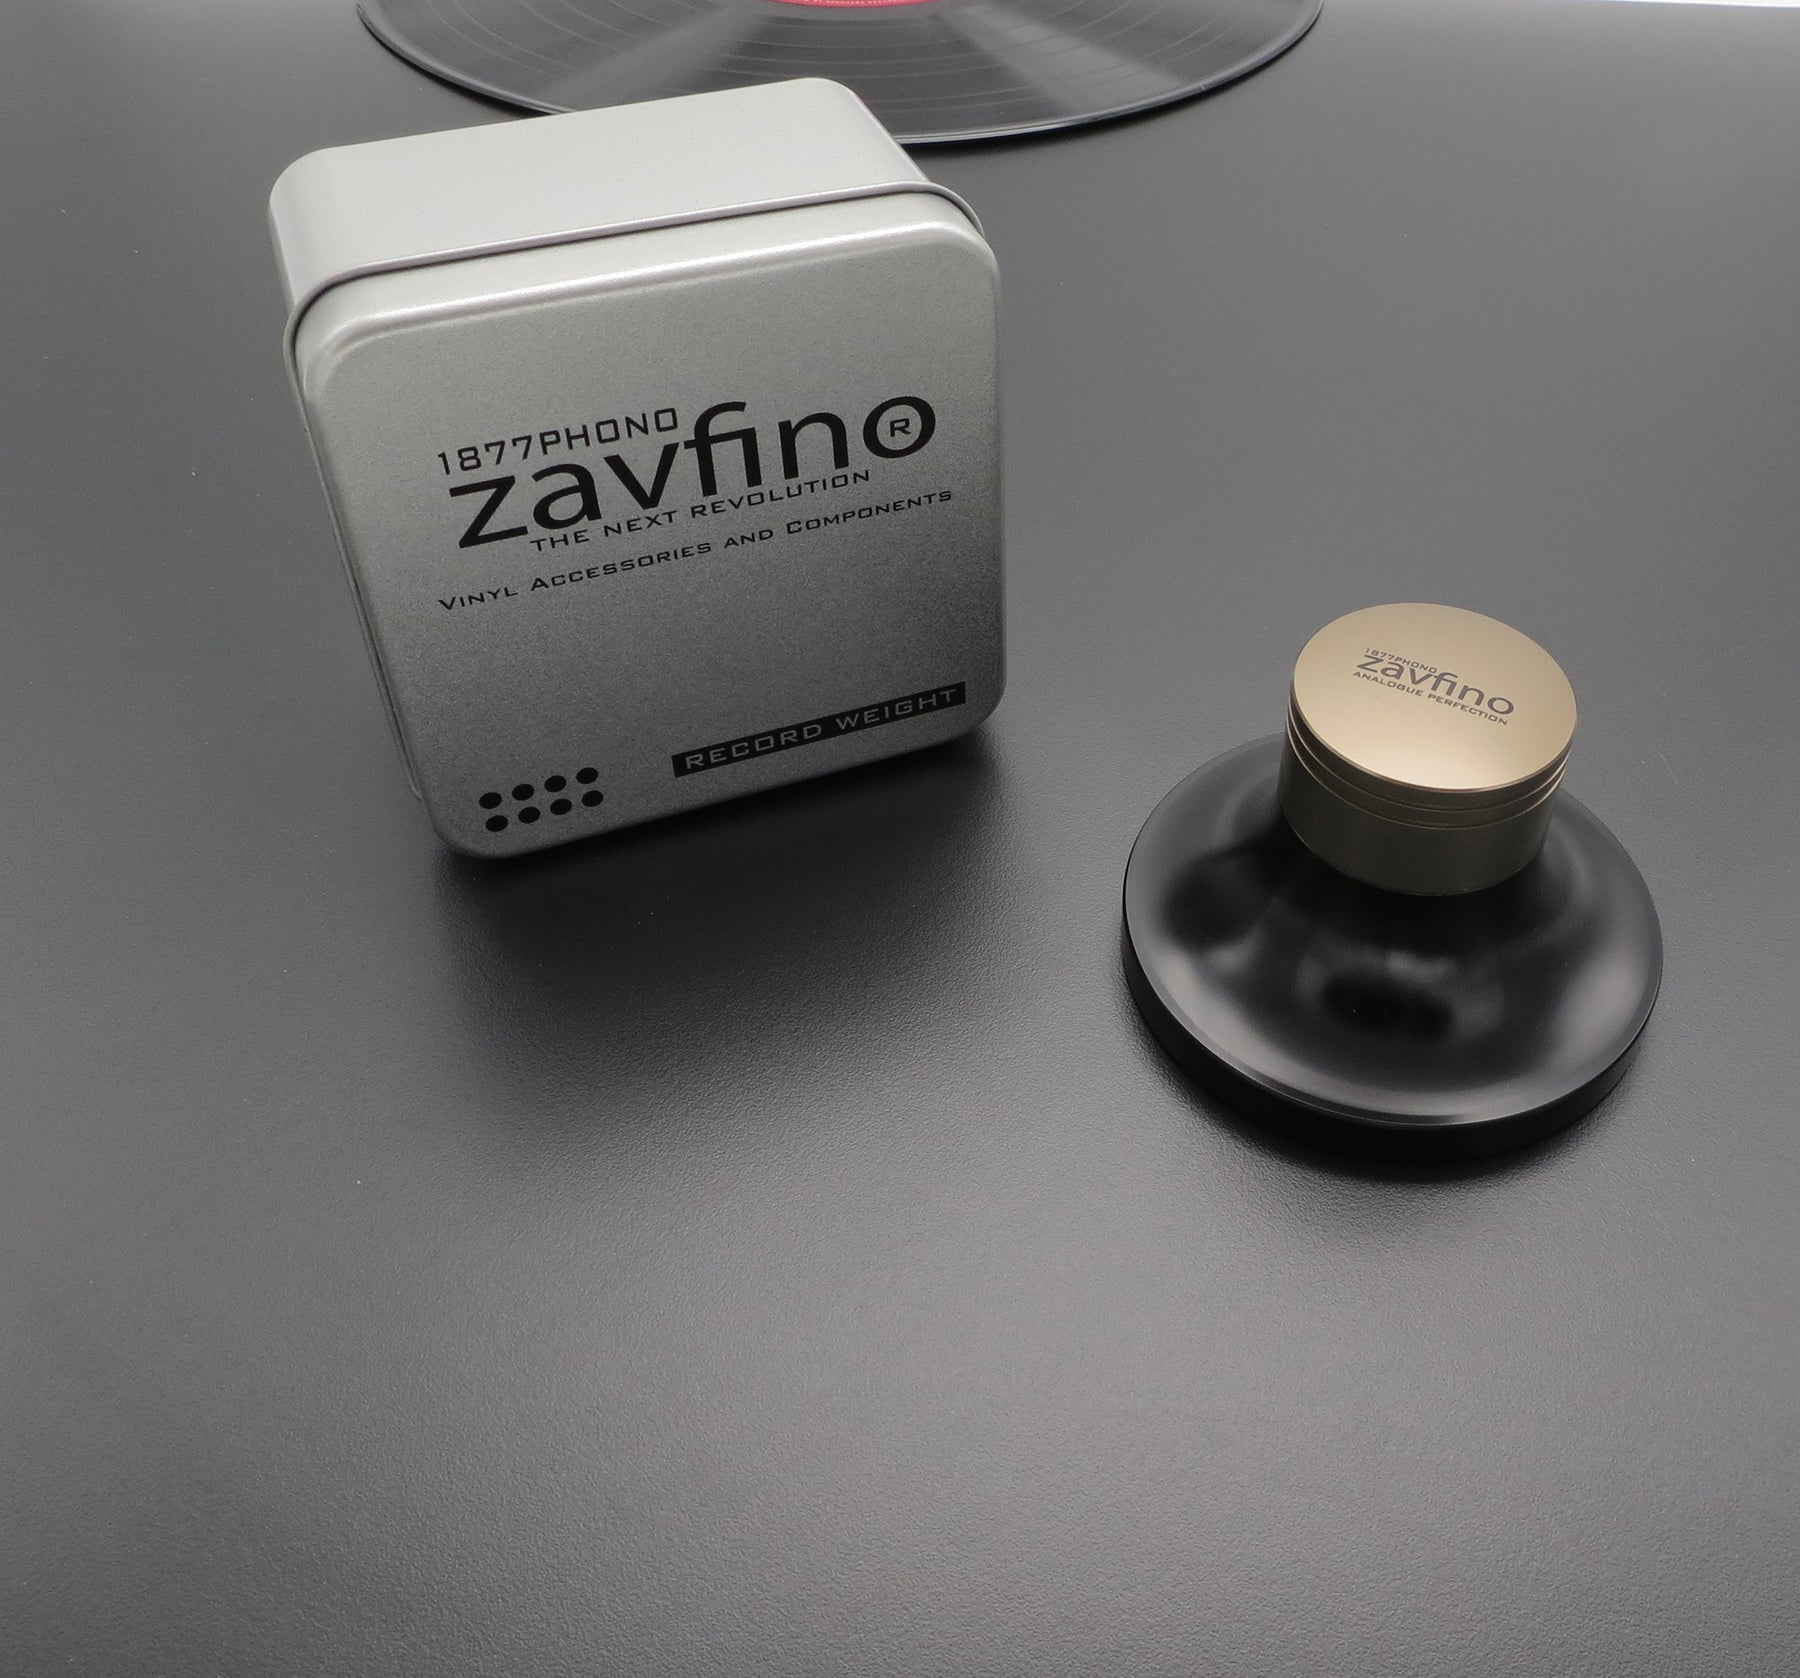 ZAVFINO Record Weight - ZavfinoUSA